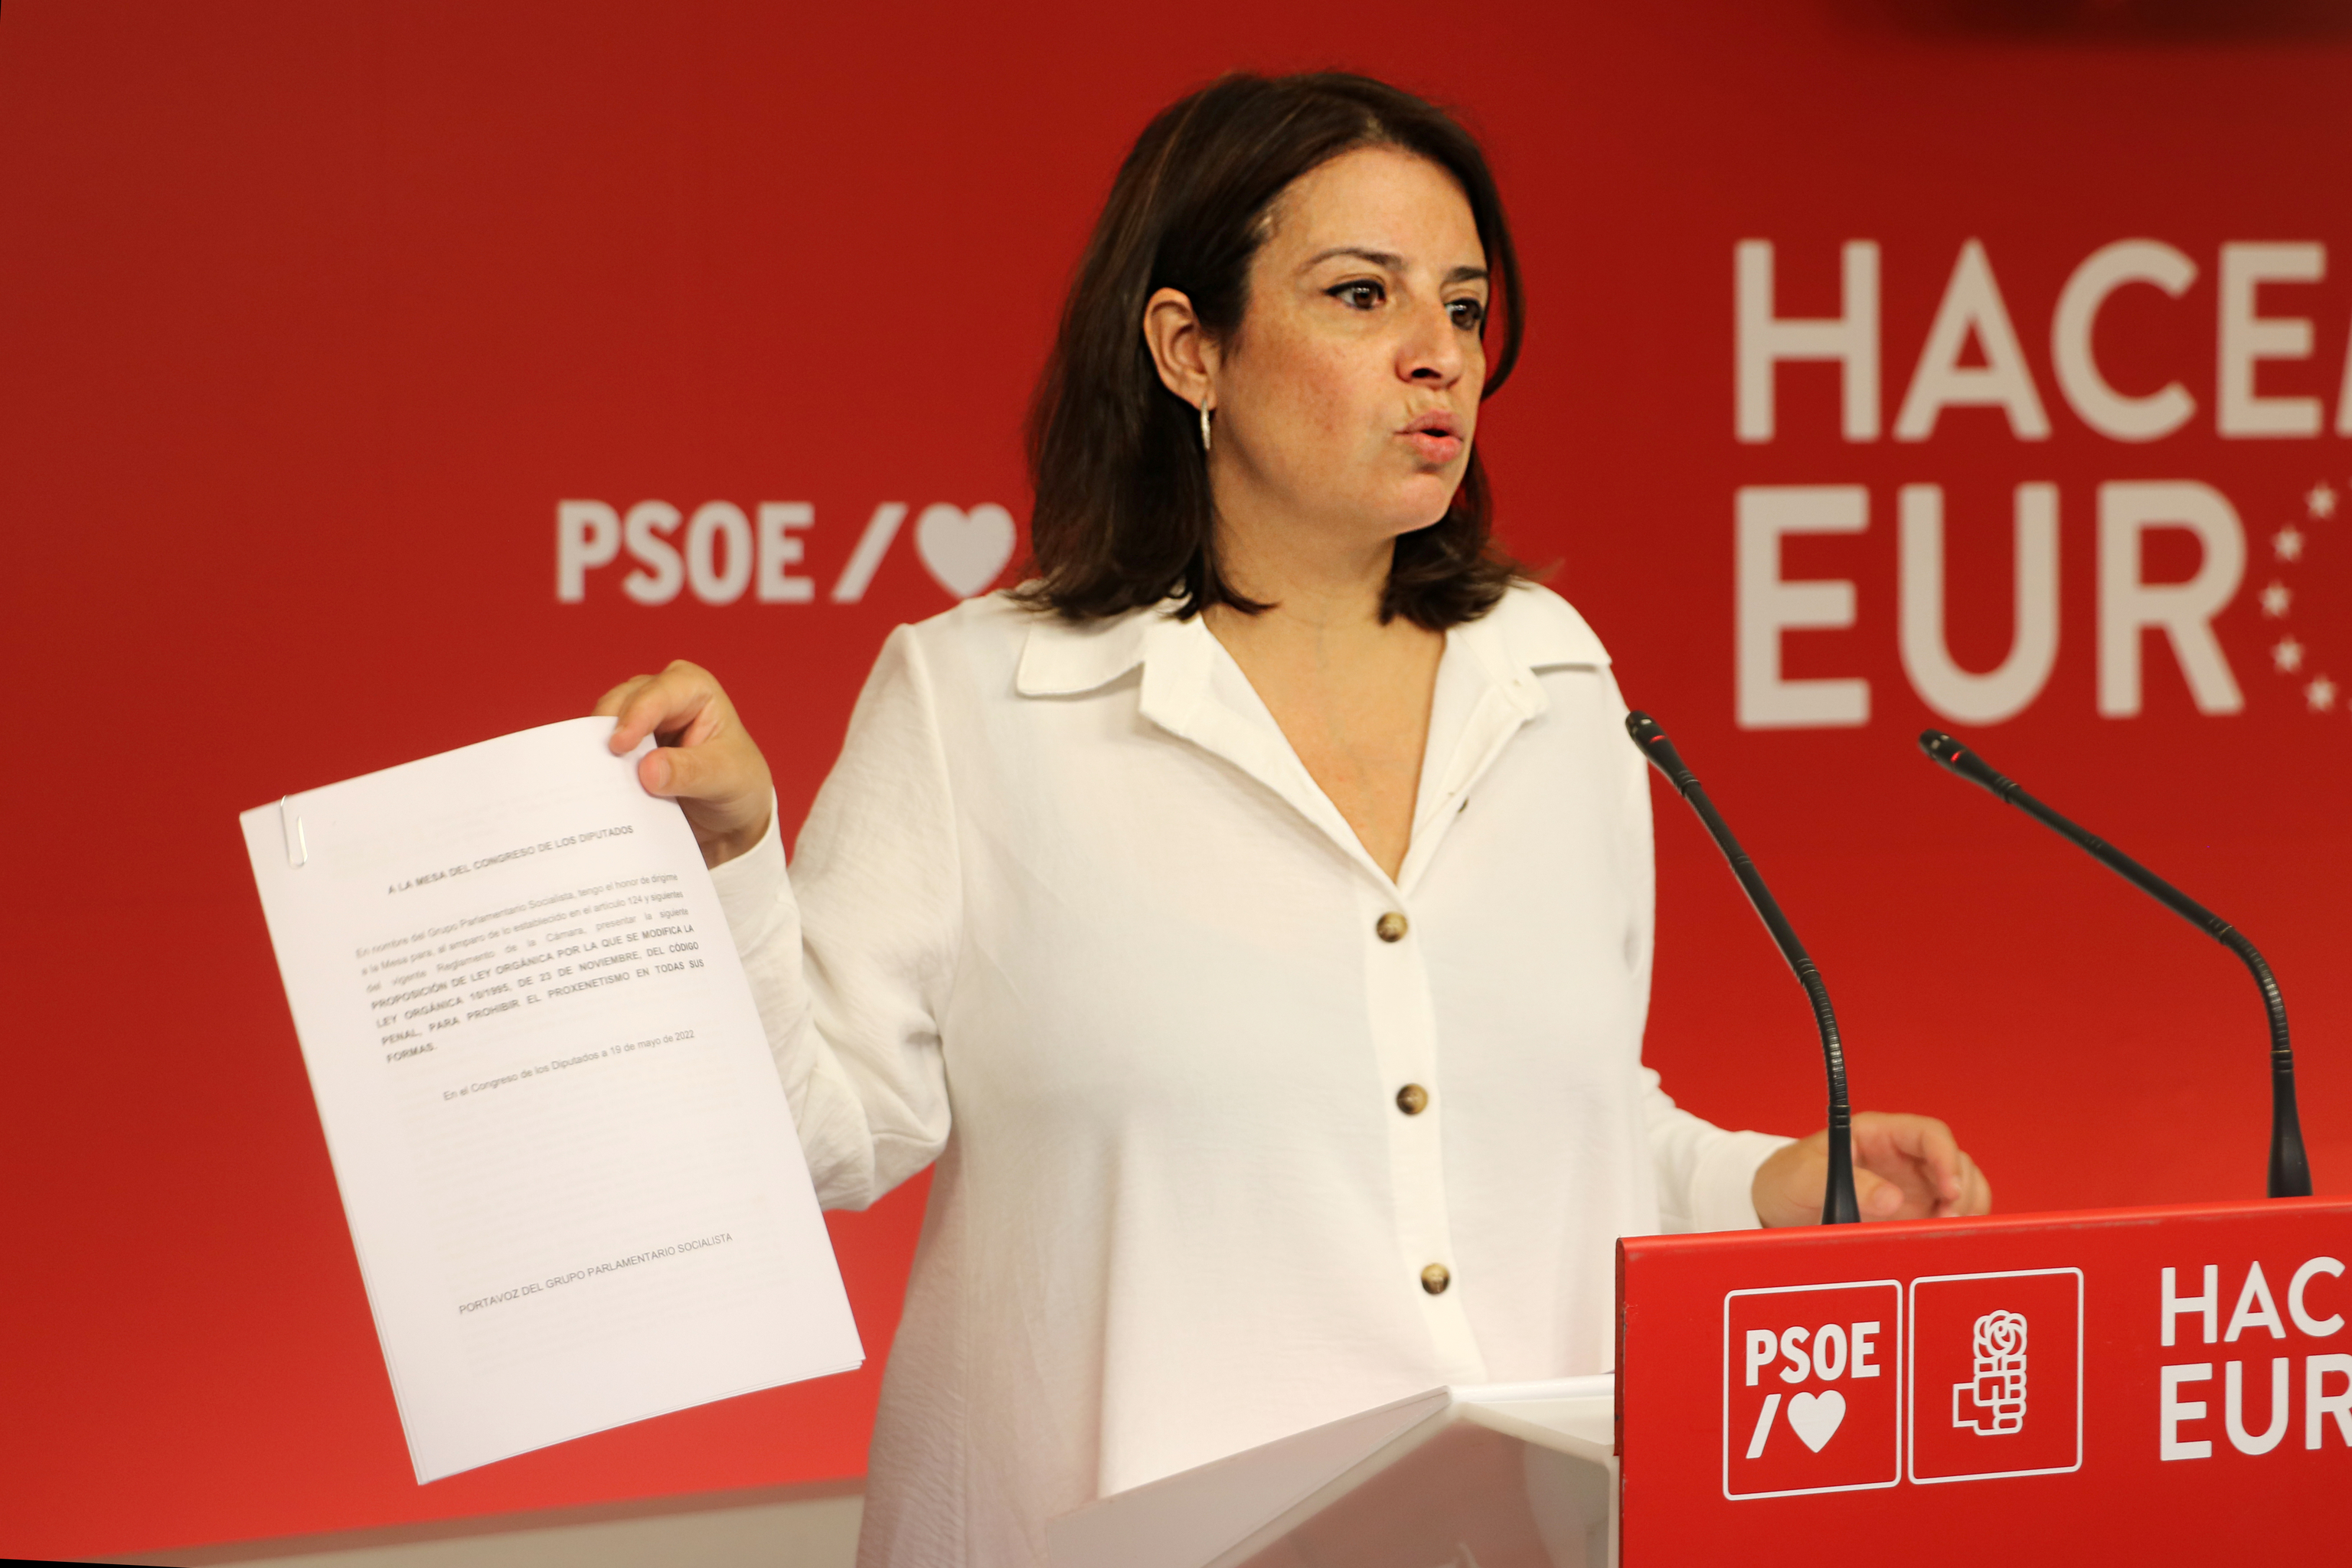 PSOE Deputy Secretary General Adriana Lastra.